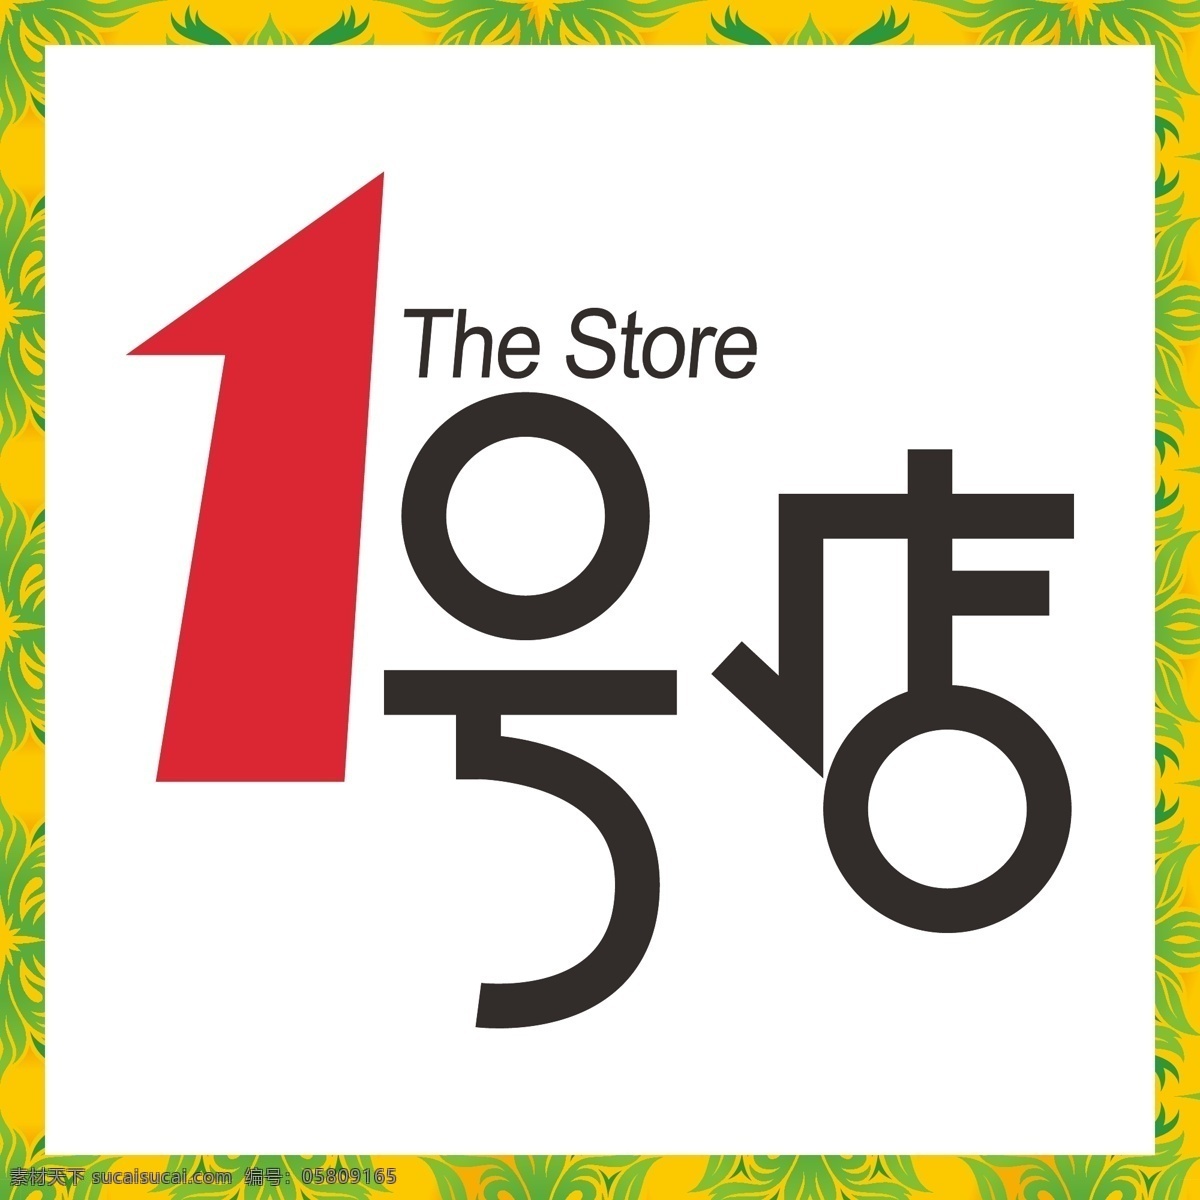 号 店 logo 1号店 一号店 网购 网络购物 互联网 包邮 标志 矢量 vi logo设计